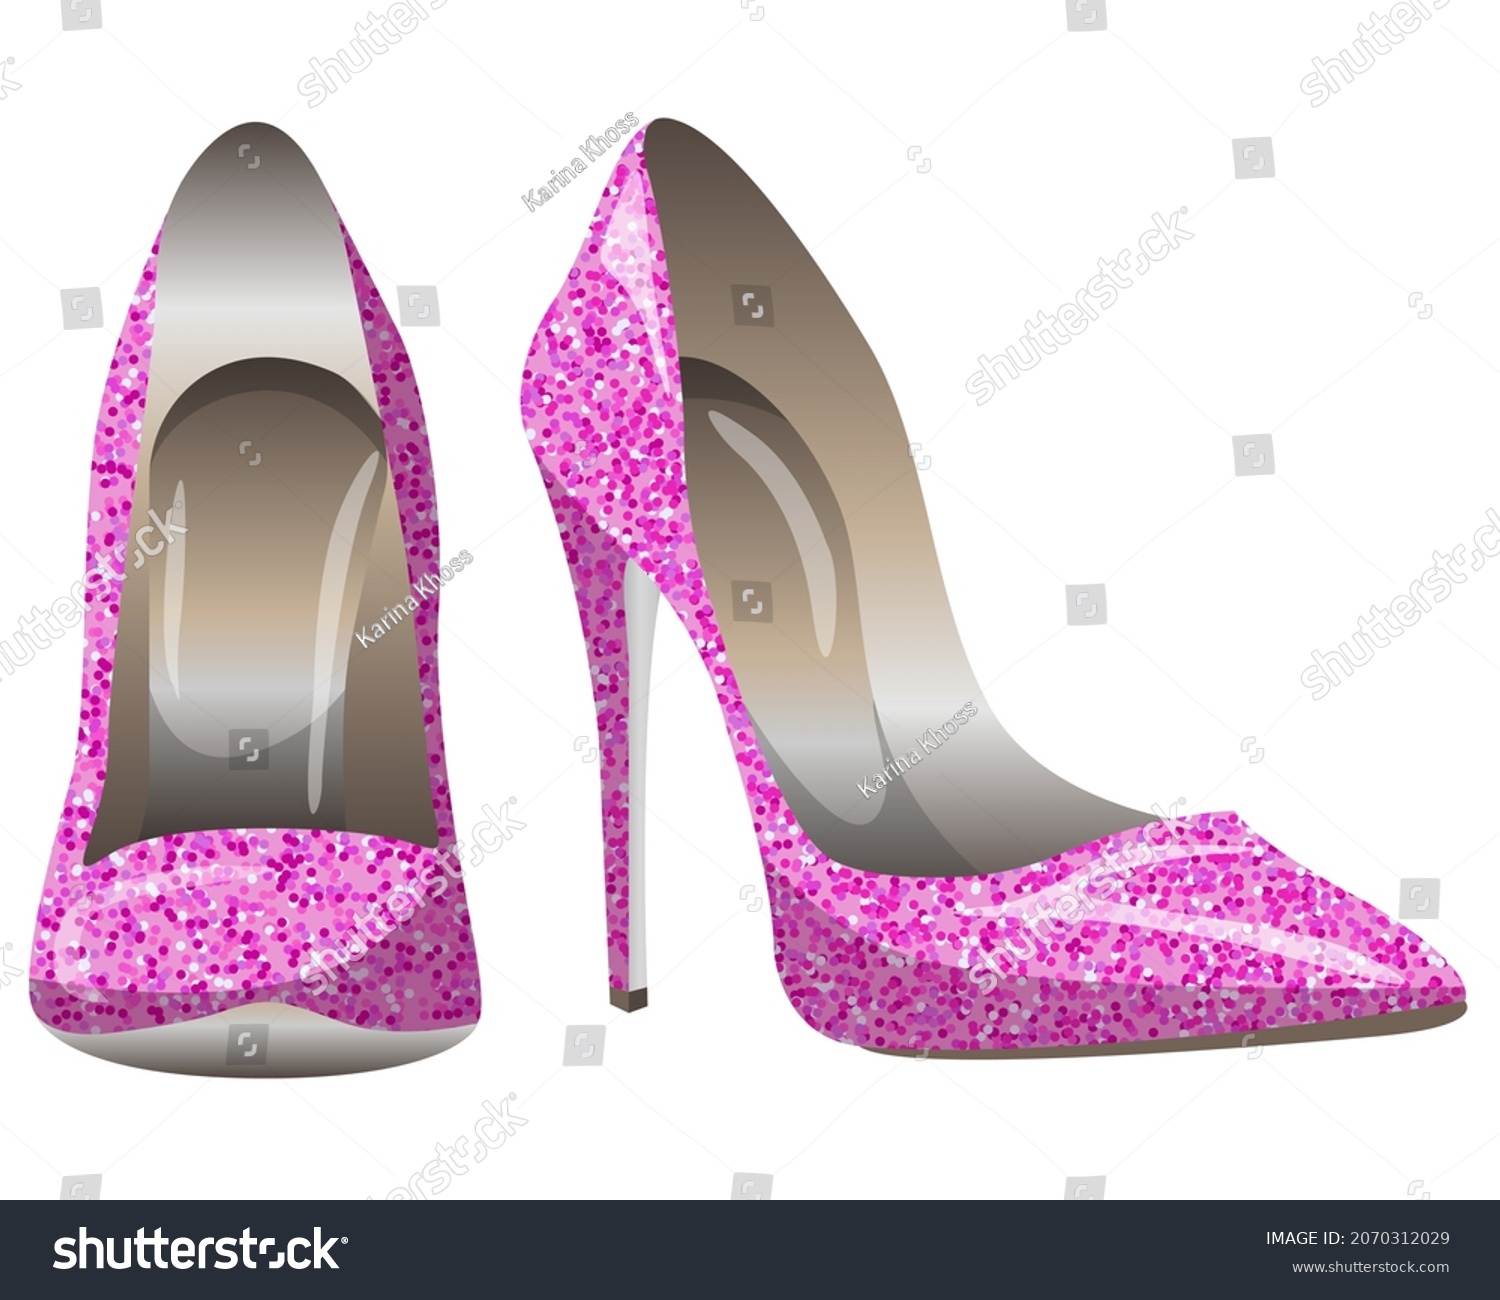 6,032 Heels glitter Images, Stock Photos & Vectors | Shutterstock